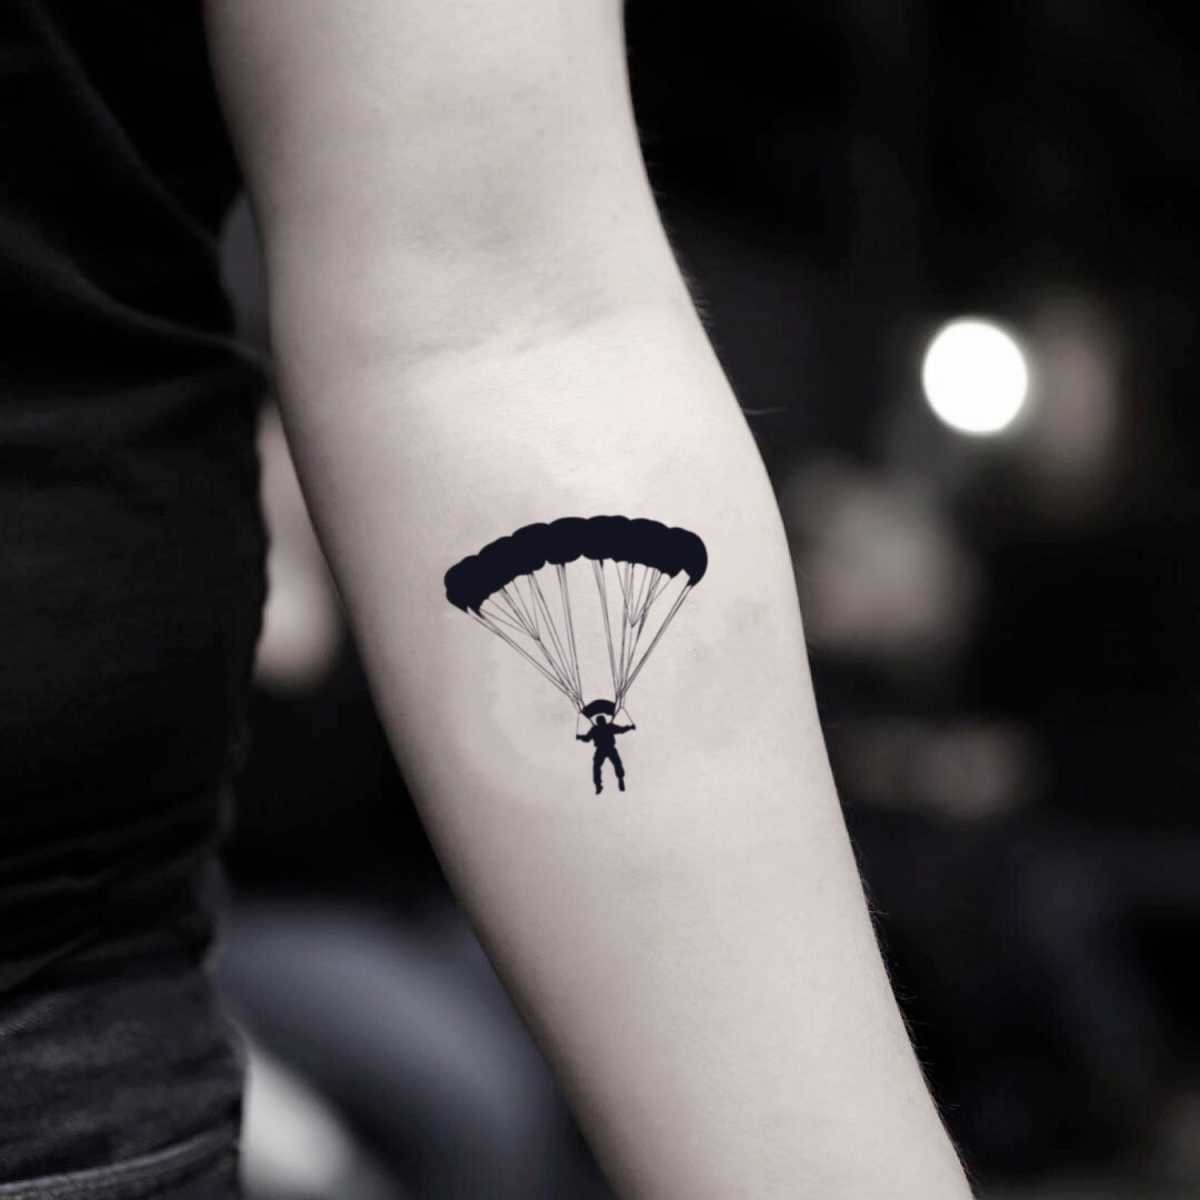 Skydive Temporary Tattoo Sticker - OhMyTat  Fake tattoos, Tattoo